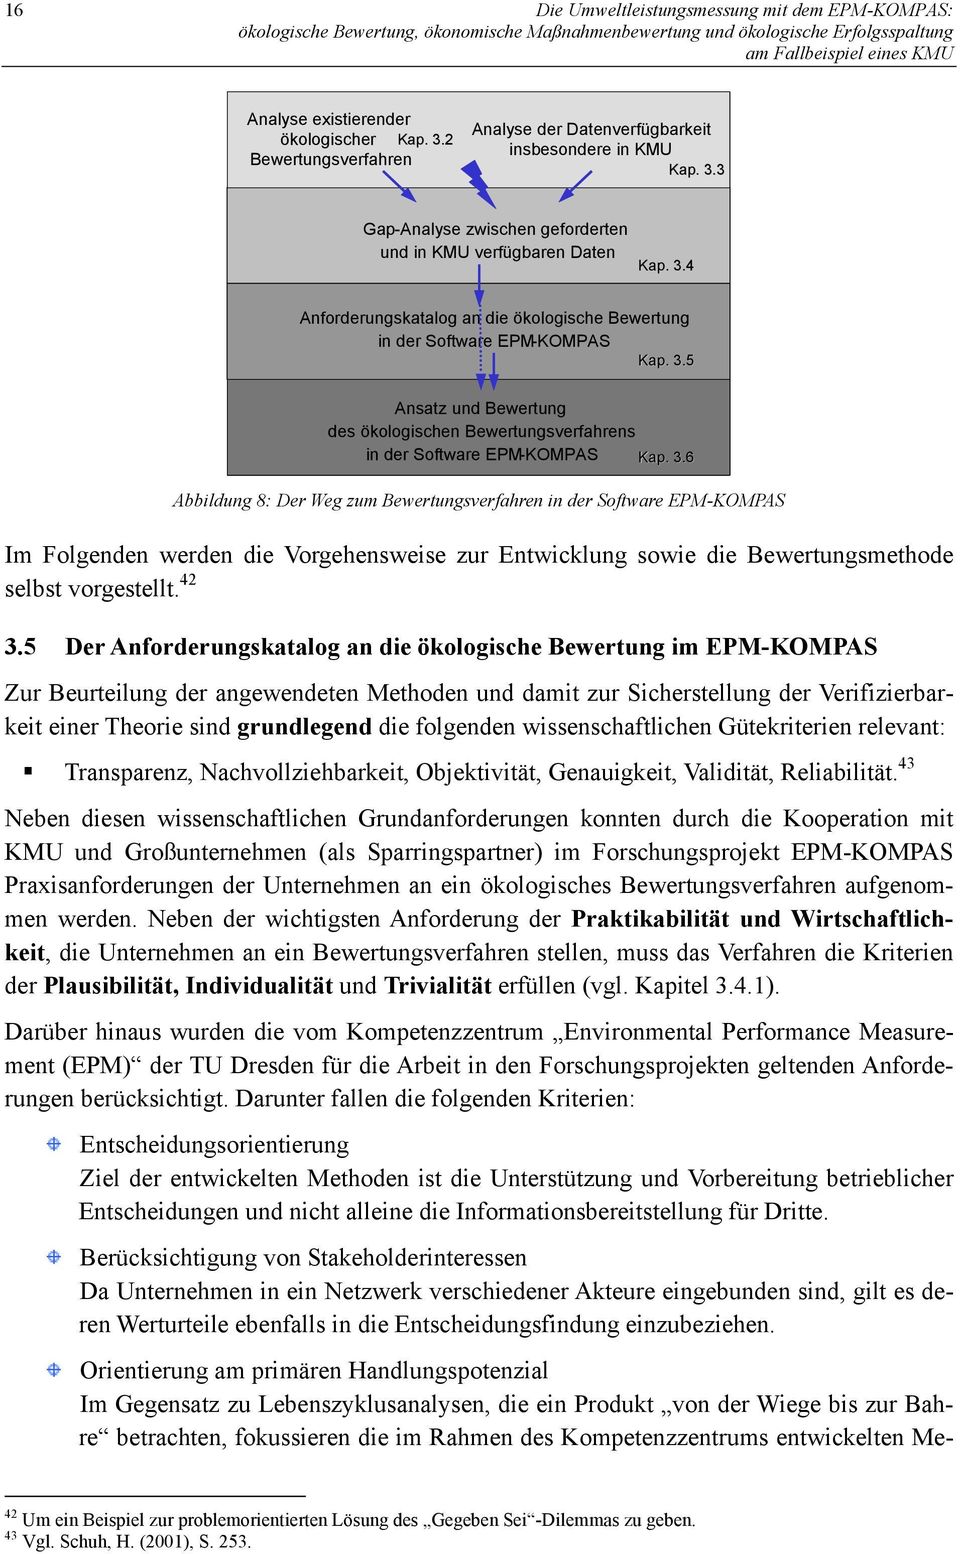 42 3.5 Der Anforderungskatalog an die ökologische Bewertung im EPM-KOMPAS Zur Beurteilung der angewendeten Methoden und damit zur Sicherstellung der Verifizierbarkeit einer Theorie sind grundlegend